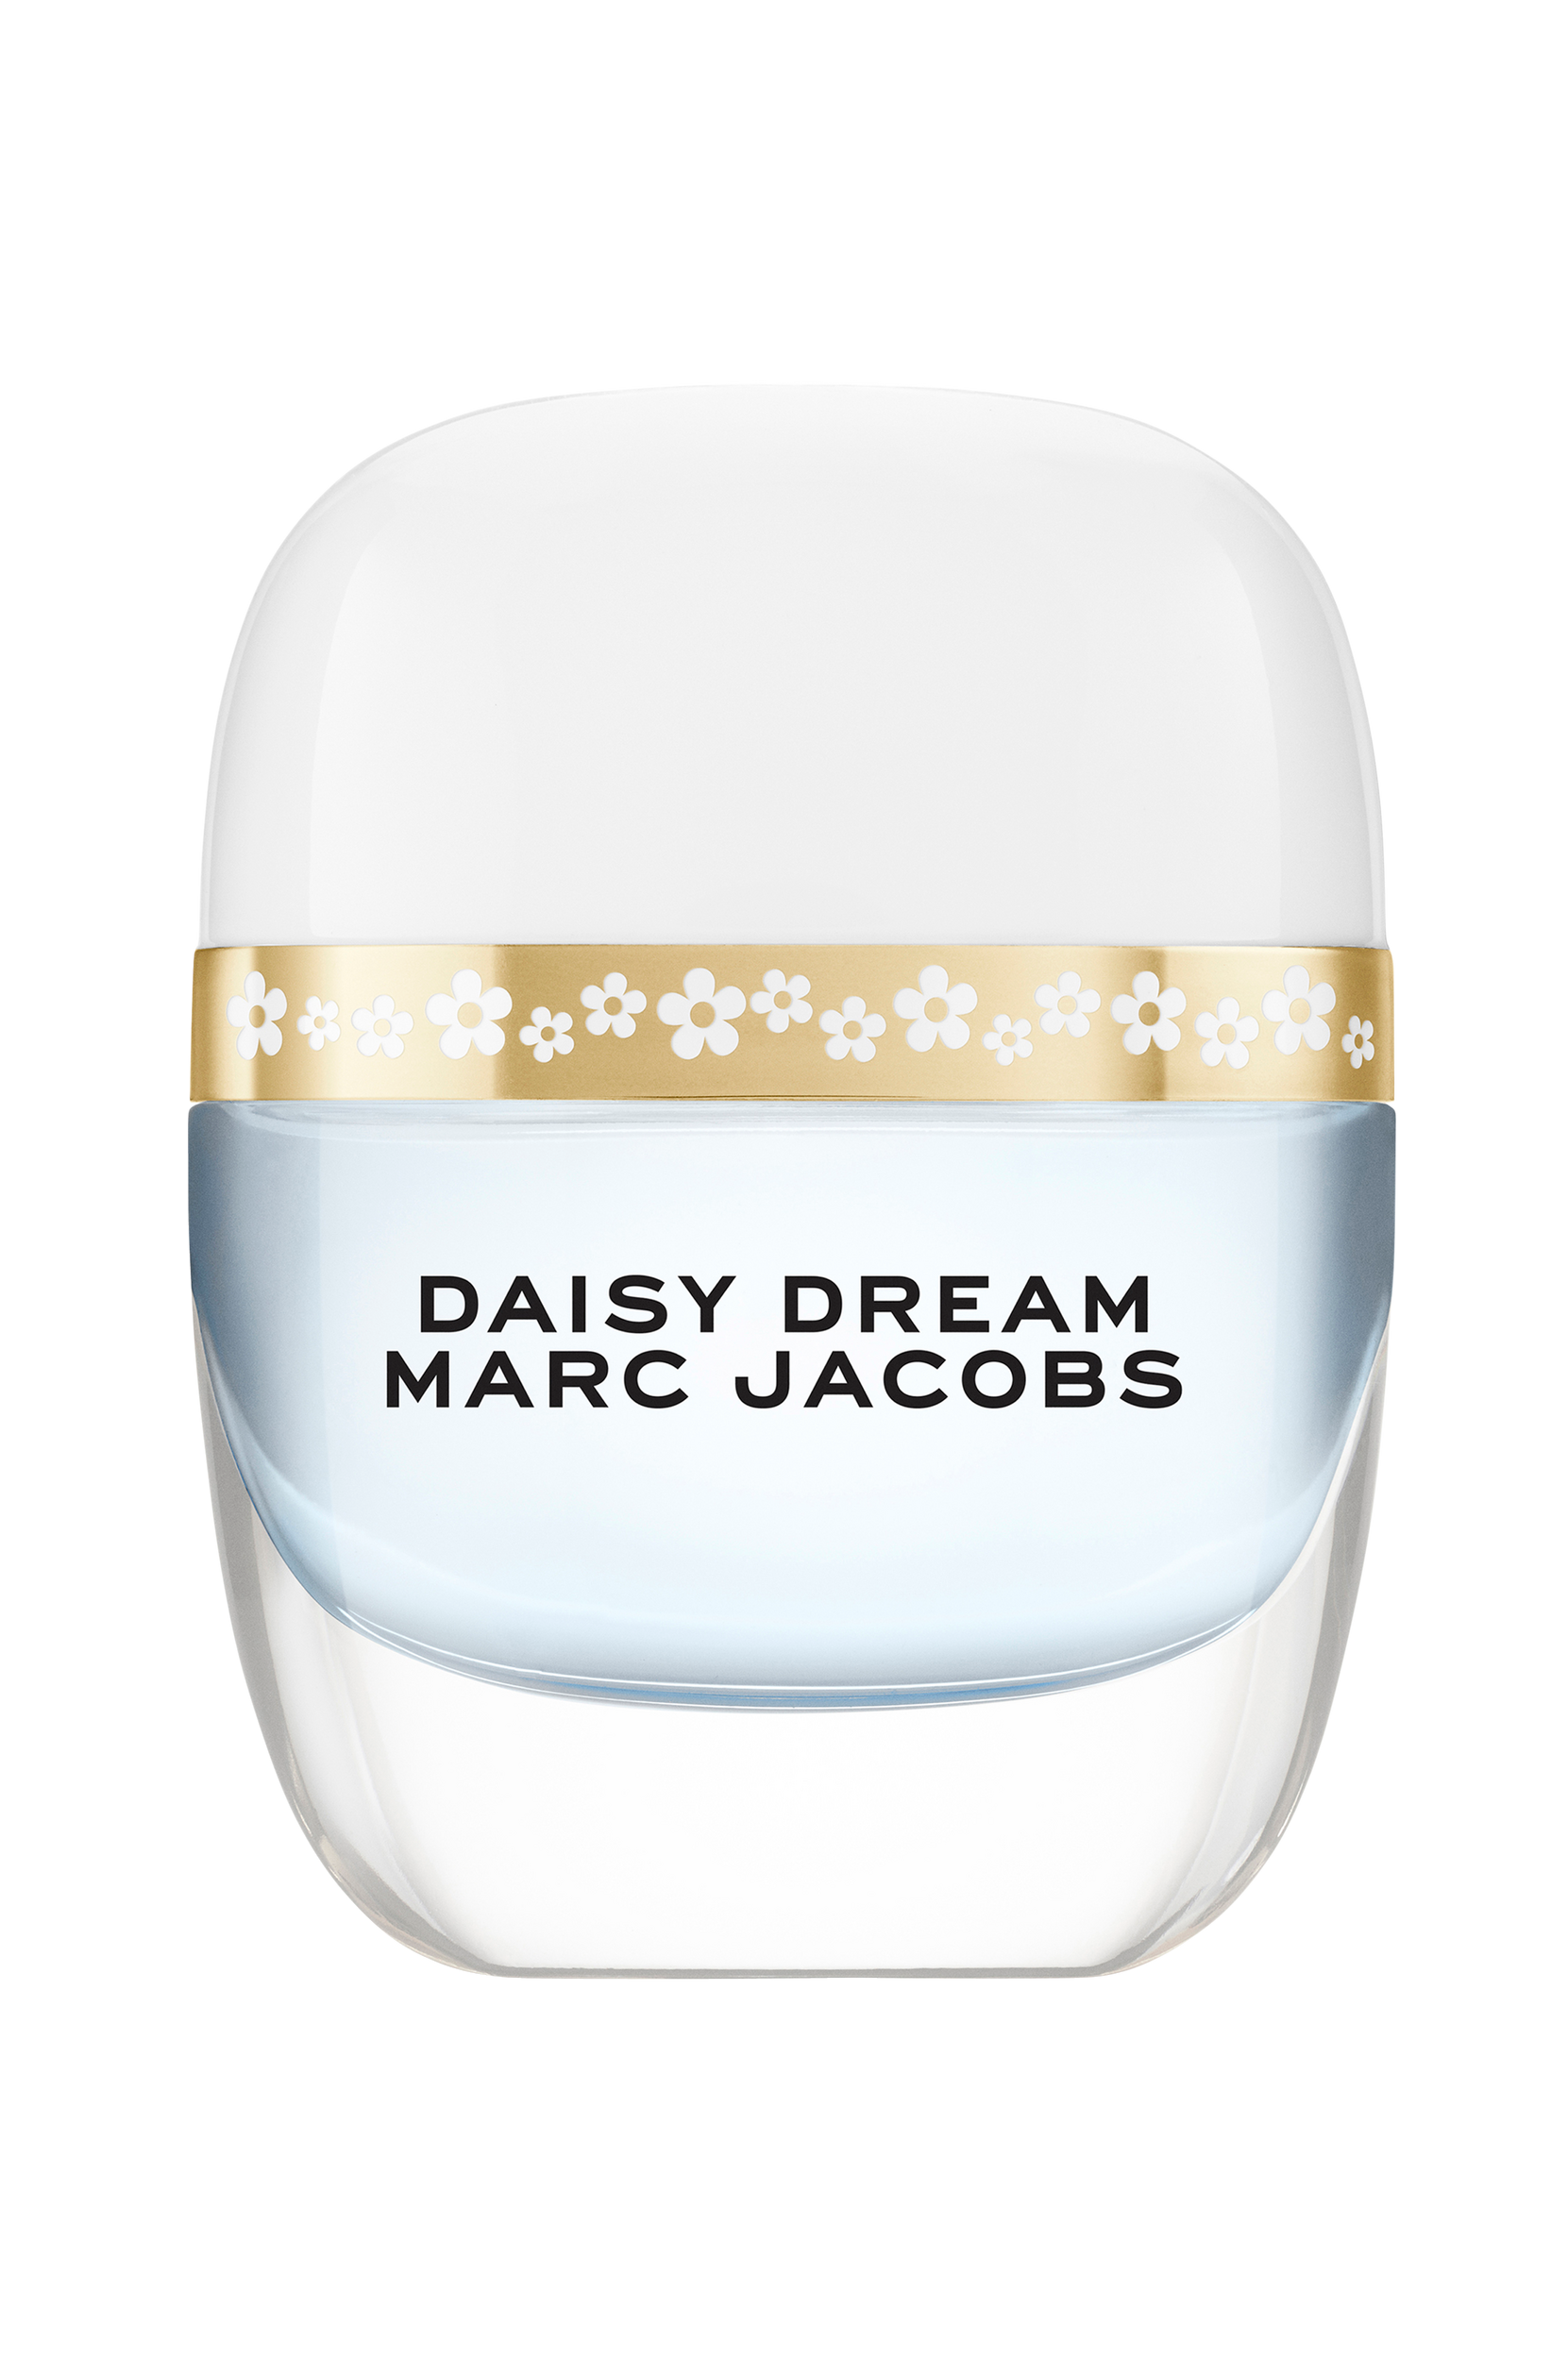 Daisy Dream eau de toilette 20 ml, Marc Jacobs